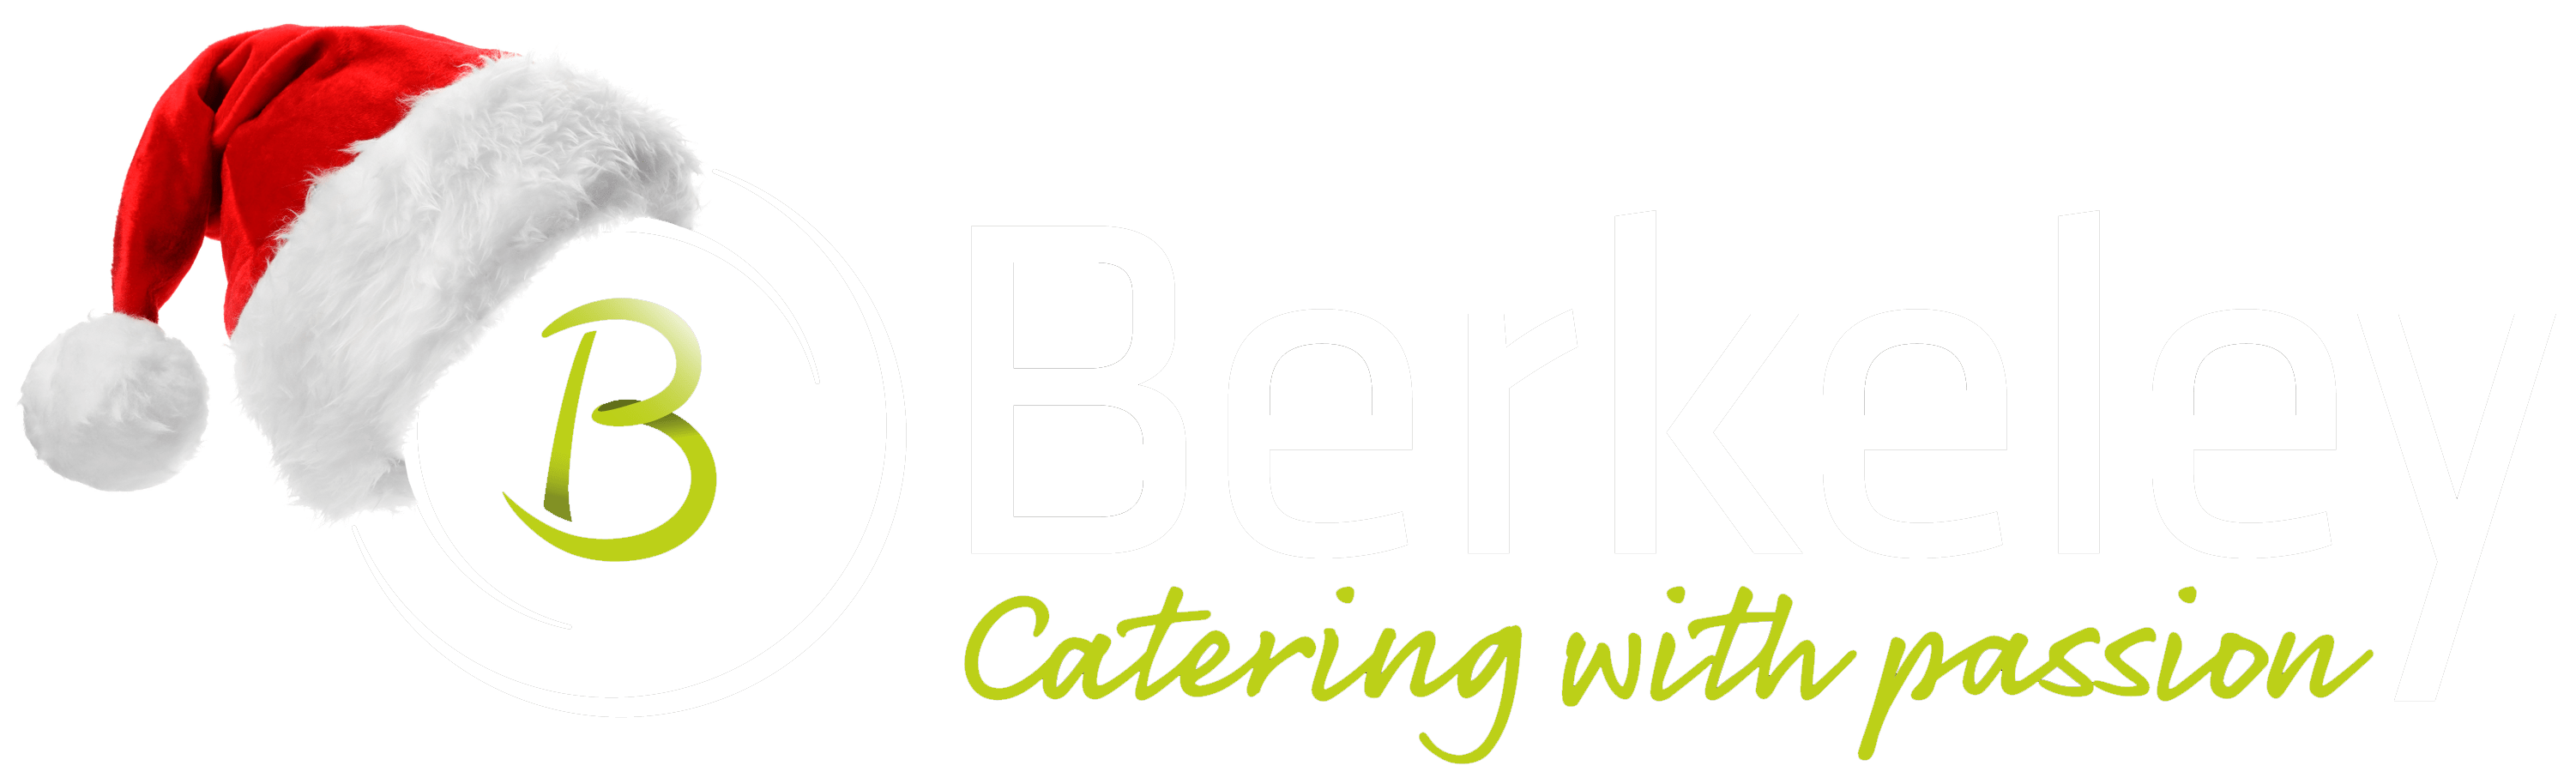 Berkeley Catering